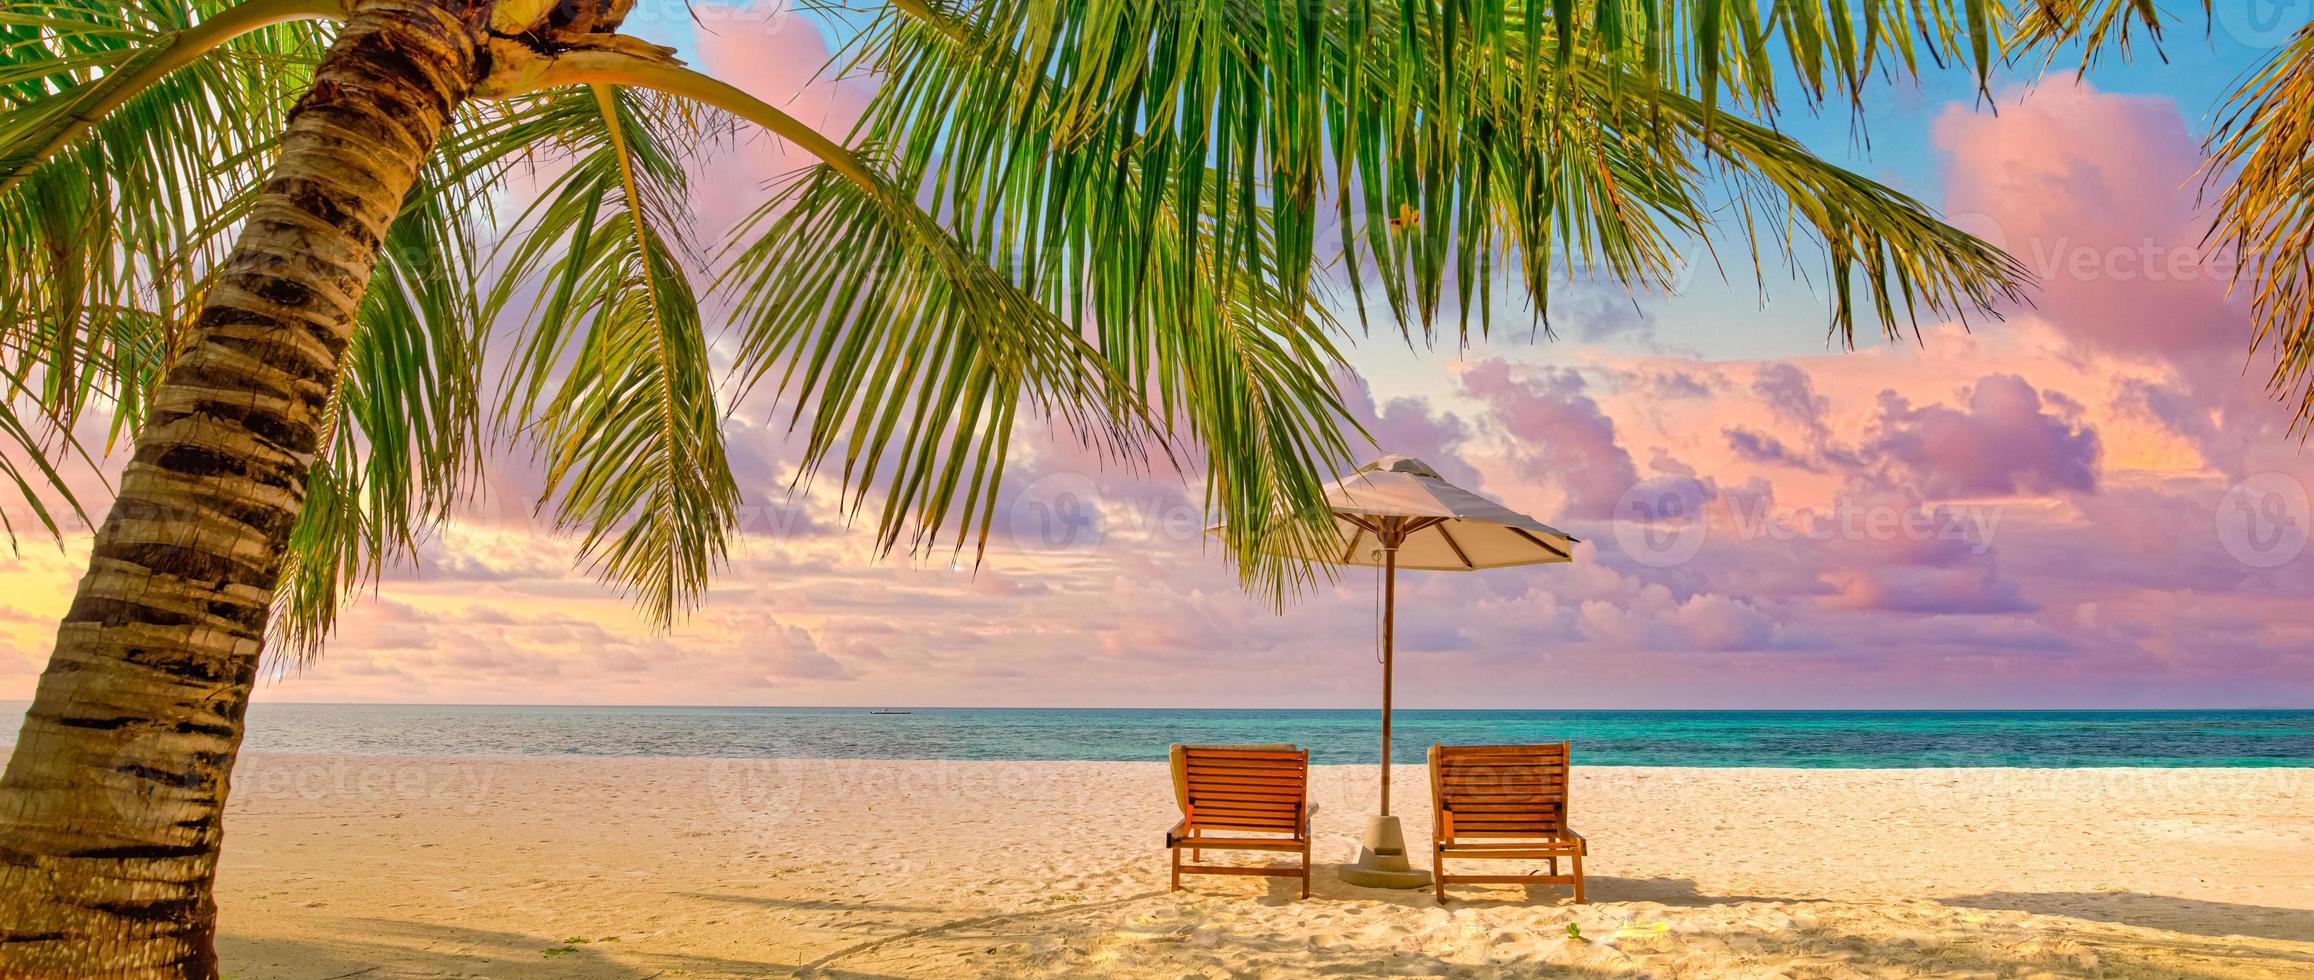 hermosa playa. sillas en la playa de arena cerca del mar. concepto de vacaciones y vacaciones de verano para el turismo. paisaje tropical inspirador. panorama tranquilo, playa relajante, diseño de paisaje tropical foto